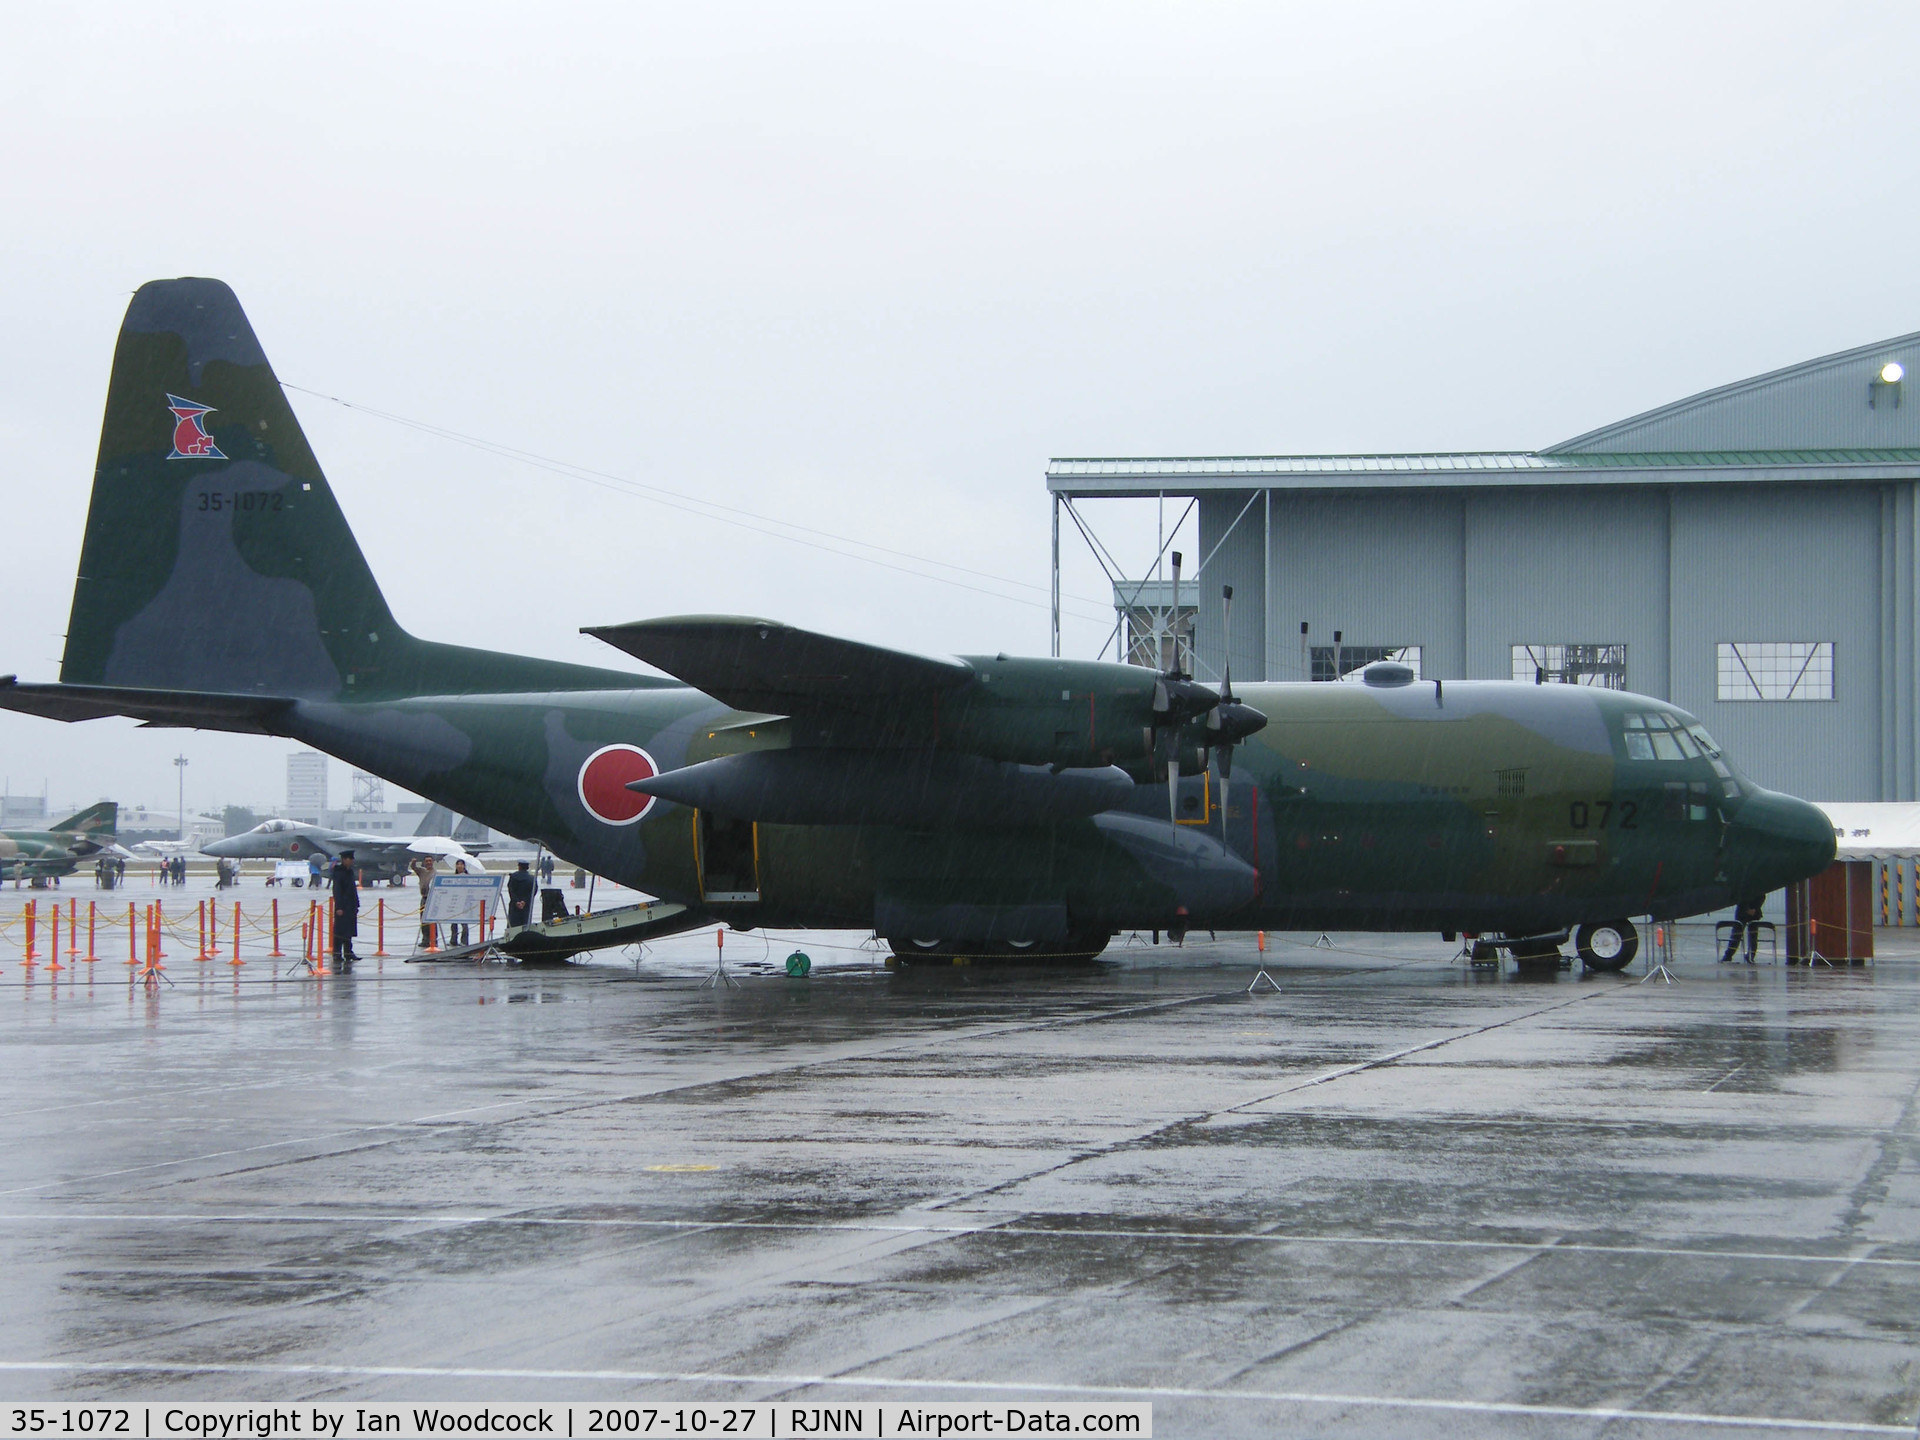 35-1072, Lockheed C-130H Hercules C/N 382-4980, C-130H/Nagoya